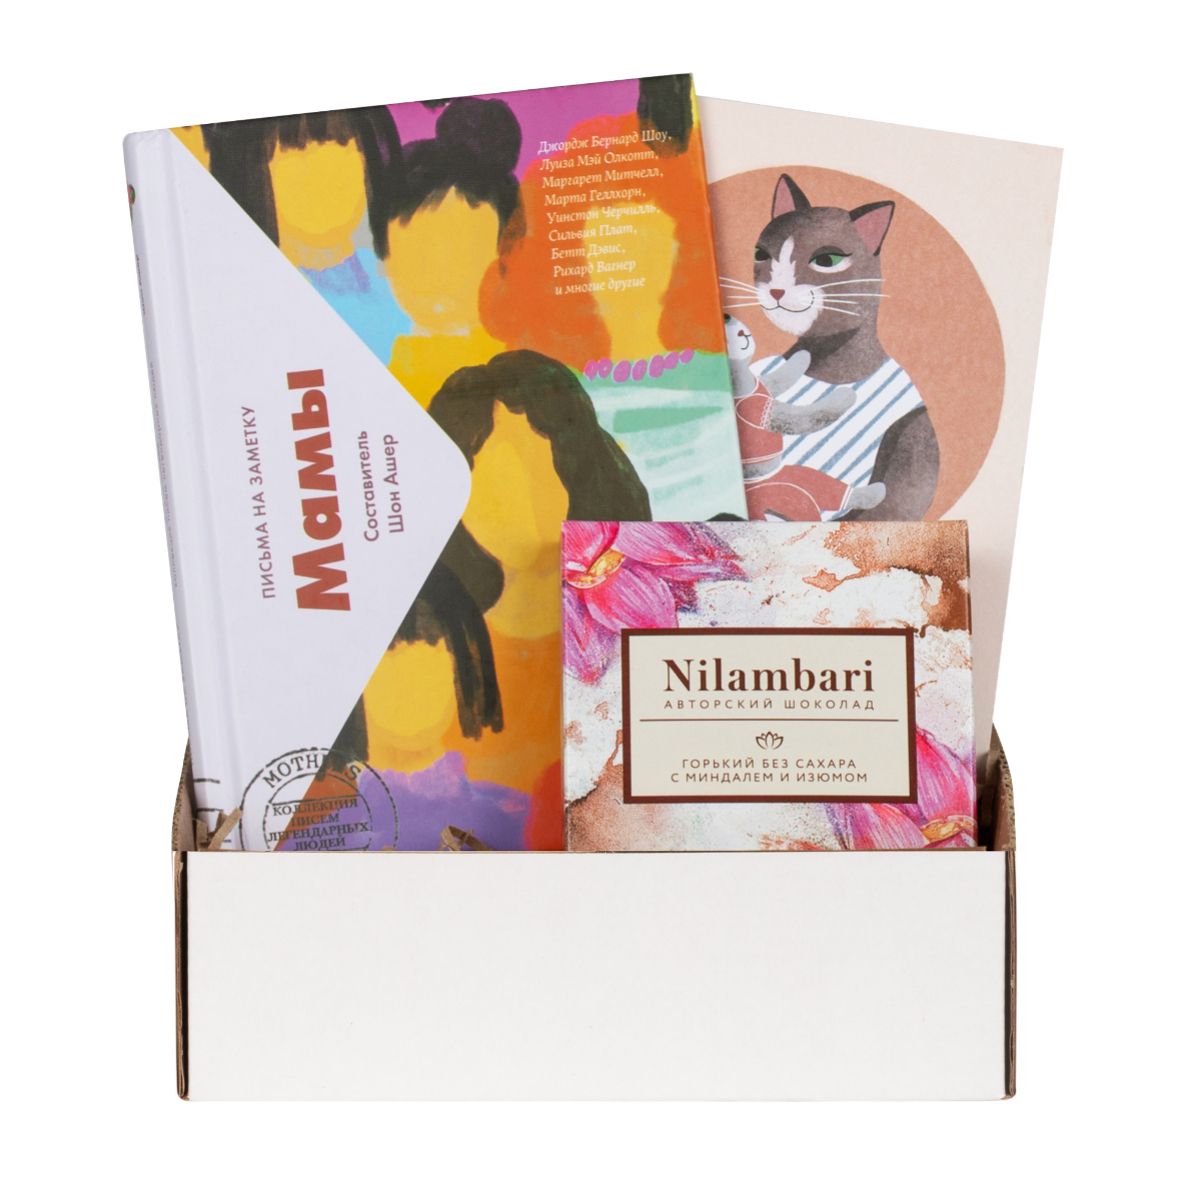 Подарочный набор с книгой «Мамы. Письма на заметку» и авторским шоколадом